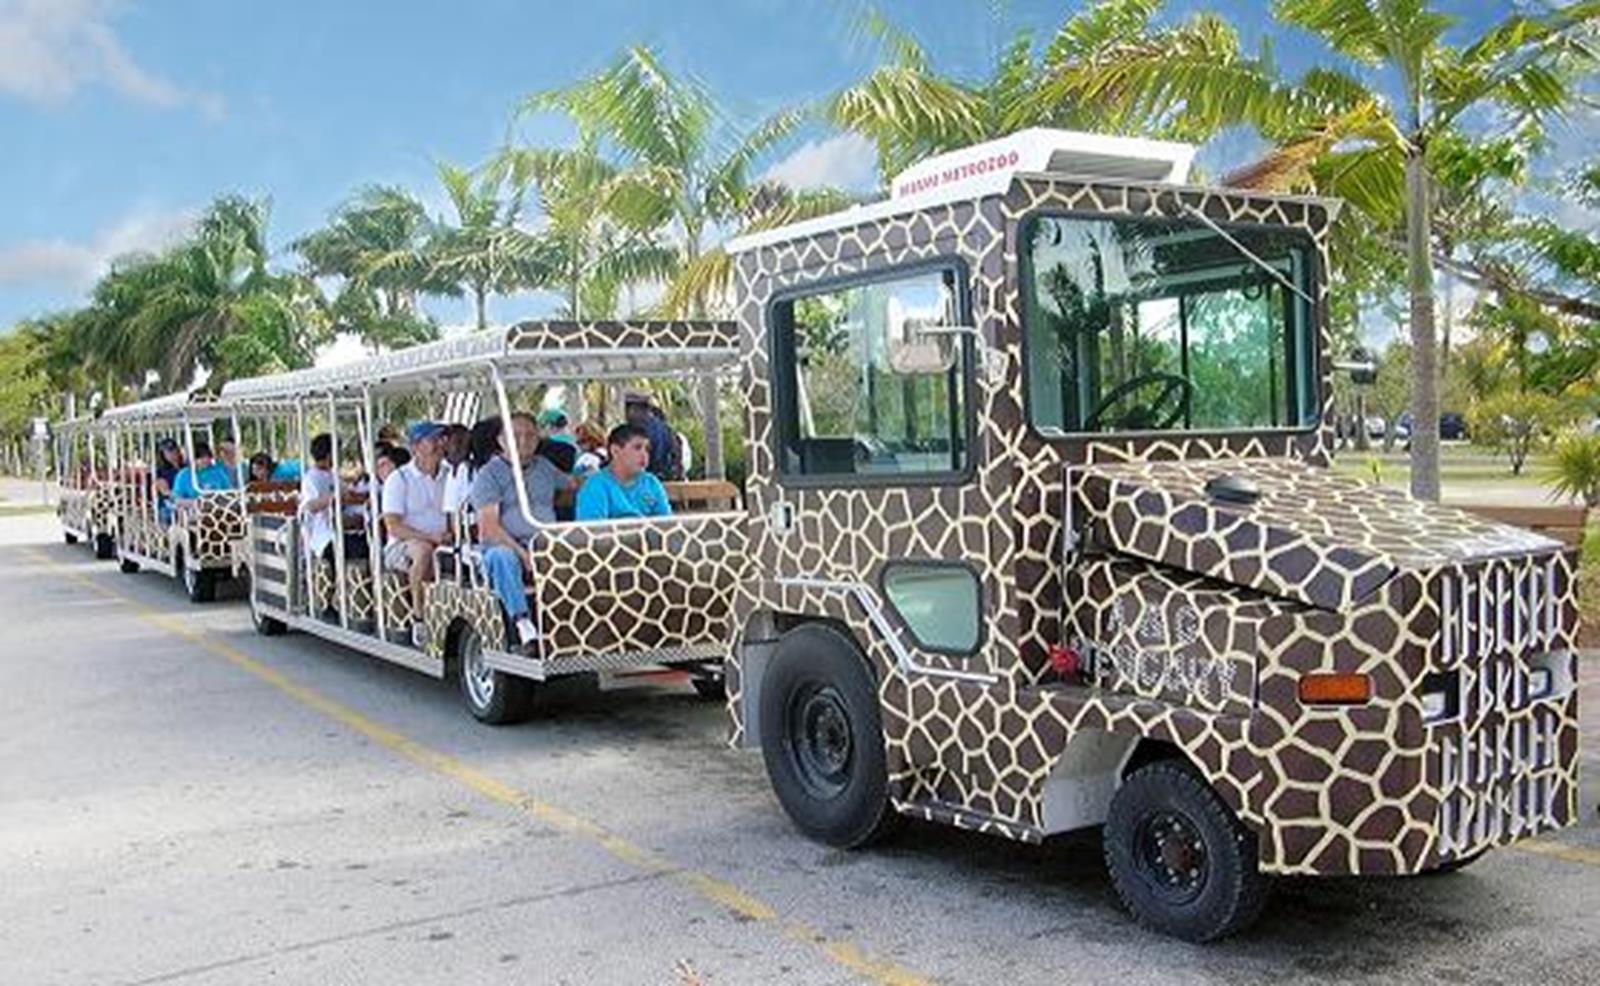 florida safari tram tour